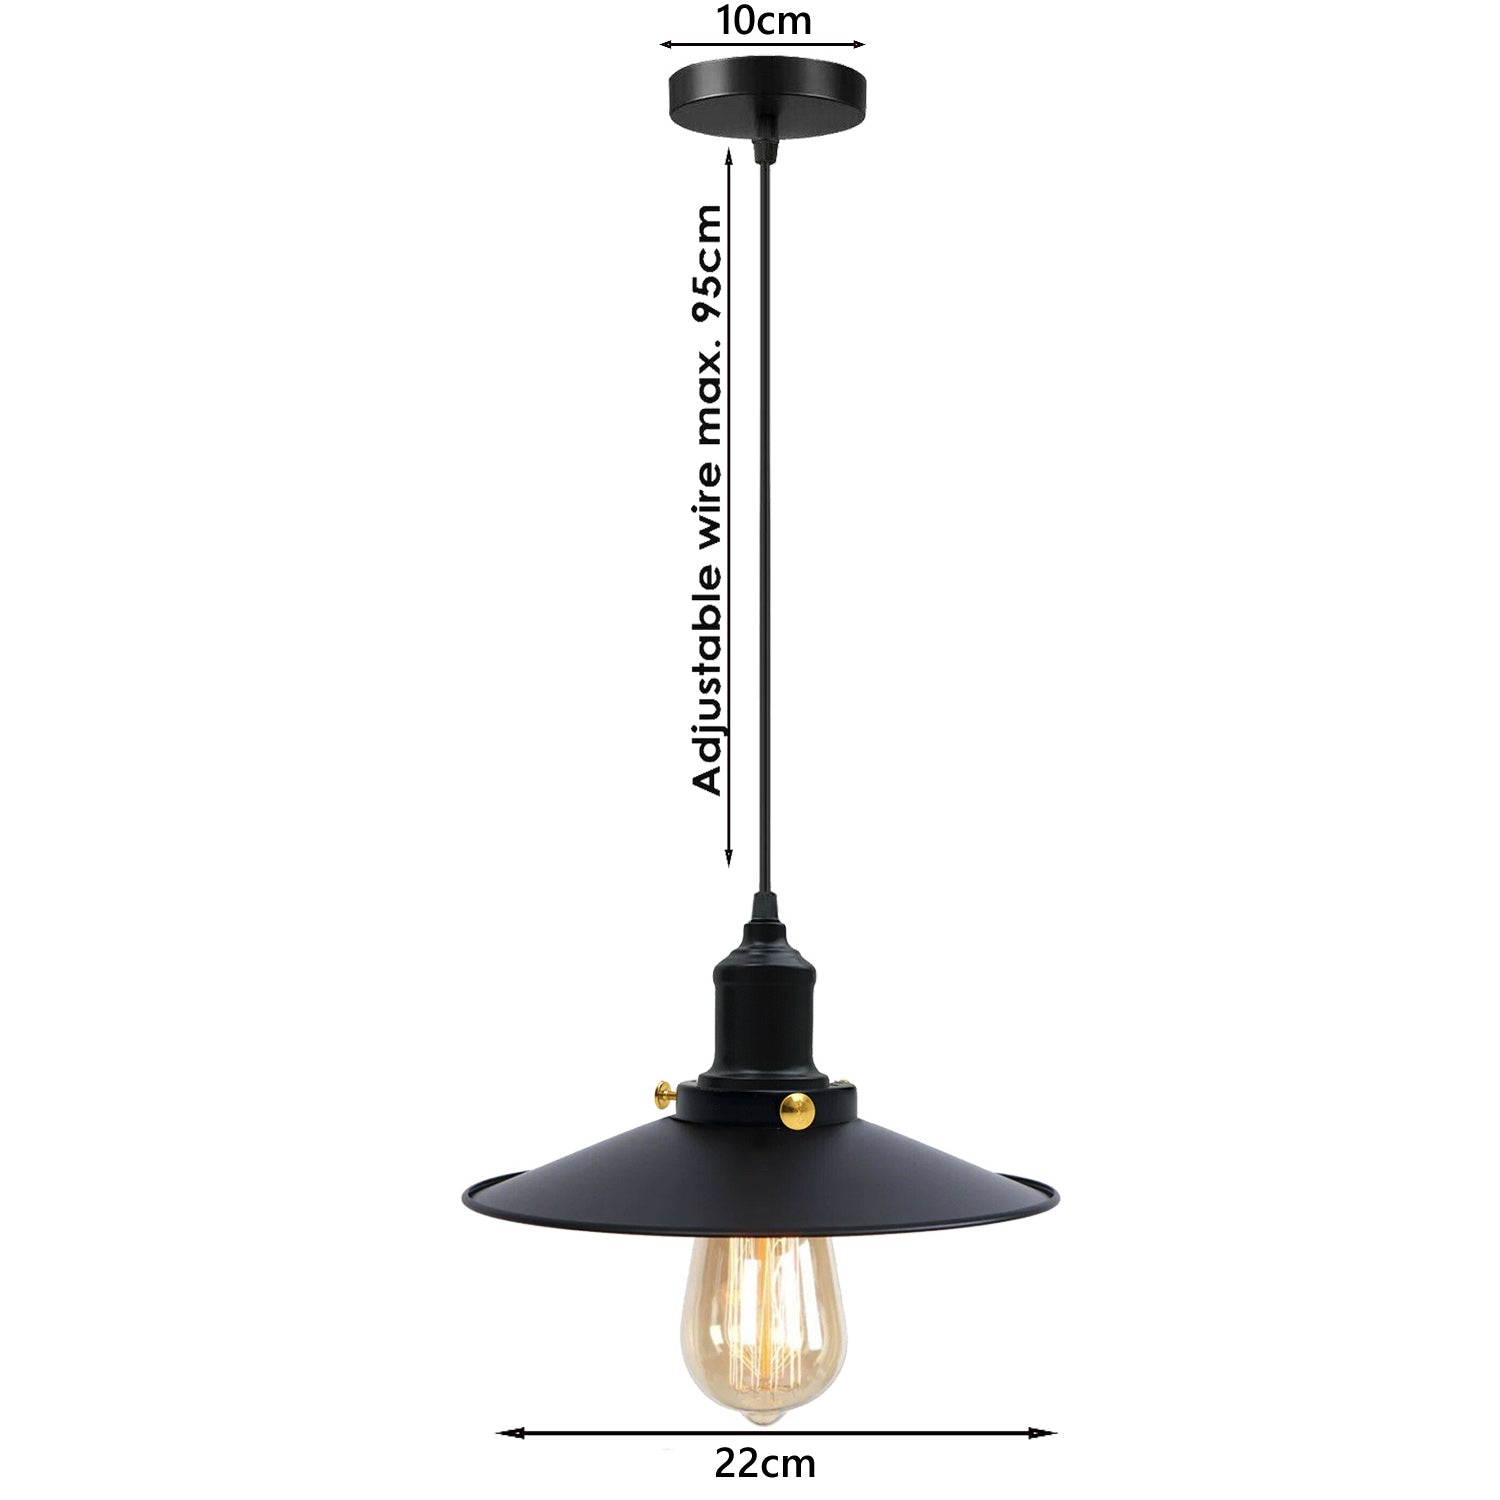 Schwarz-Vintage Deckenlampe Leuchte Pendelleuchte Industrie – Design Hängelampe Retro